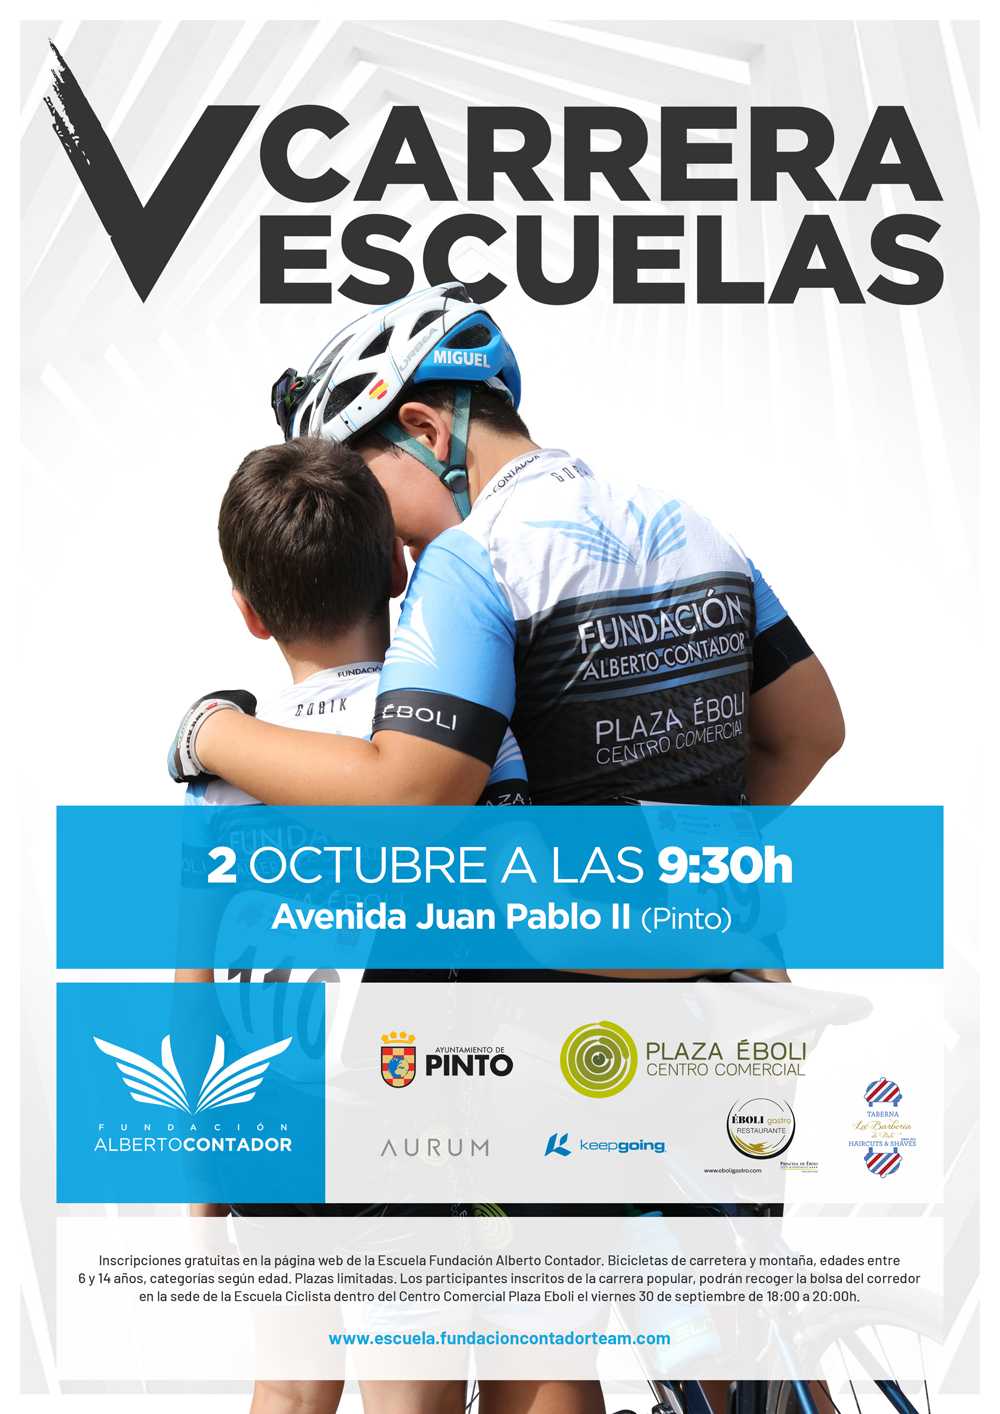 La Carrera de Escuelas de la Fundación Contador celebra su quinta edición el próximo 2 de Octubre